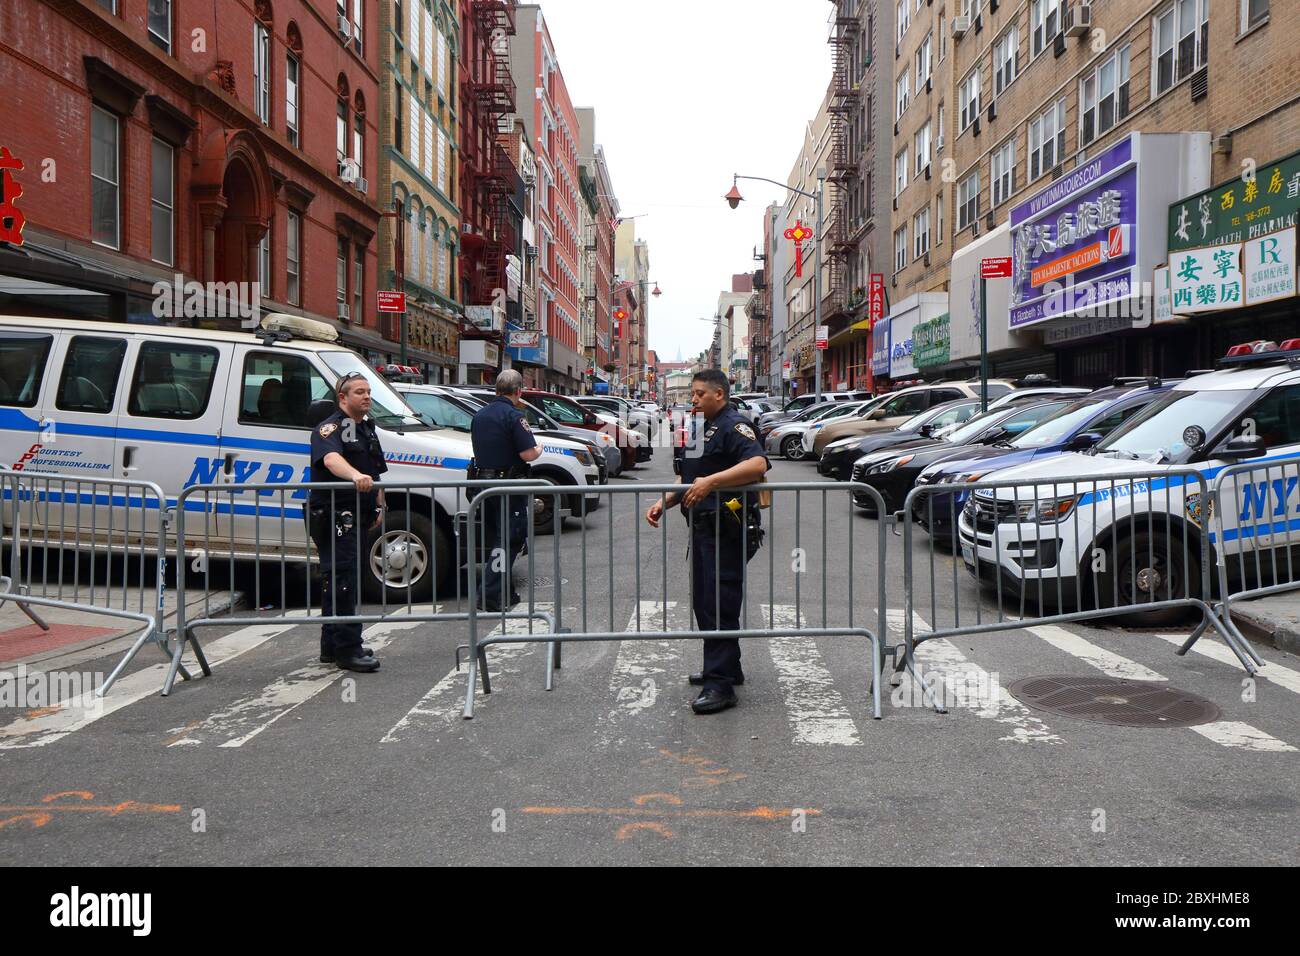 New York, NY, 5. Juni 2020. Eine Wohnstraße in Chinatown, die das 5. Bezirkhaus der NYPD beherbergt, ist verbarrikadiert und wird von der Polizei bewacht. Nach mehreren Zwischenfällen von Polizeistationen im ganzen Land, die aufgrund von Unruhen angegriffen wurden, hat die New Yorker Polizei ihre Gebäude isoliert, indem sie alle verbarrikadiert und den Zugang zu ihnen verhindert hat, es sei denn, sie können nachweisen, dass sie auf der Straße leben oder arbeiten. Für einige kann es bedeuten, Härte und große Unannehmlichkeiten. Die Rechtmäßigkeit der Straßenschließung ist fraglich. Juni 2020 Stockfoto